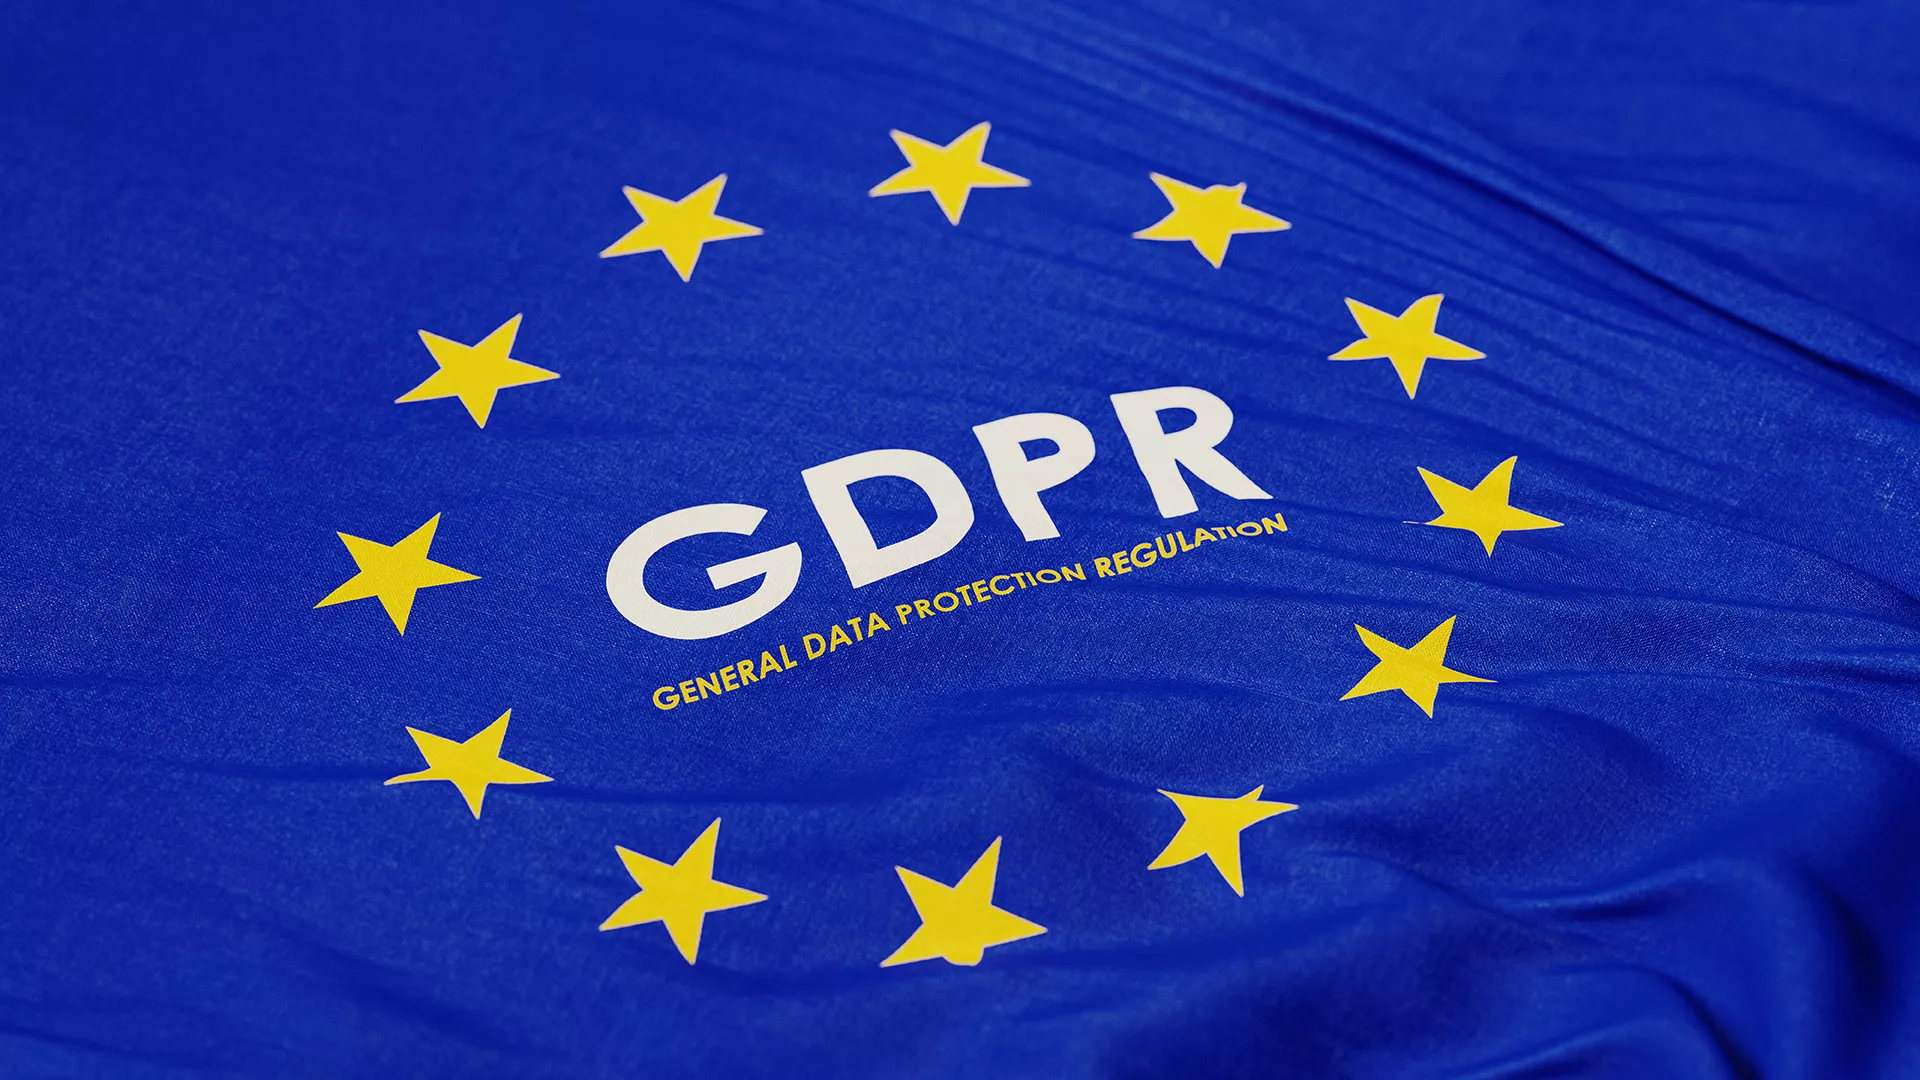 Image d'un drapeau bleu avec des étoiles jaunes rappelant celui l'Union Européen, avec écrit au centre le sigle de RGPD et sa signification juste en dessous.